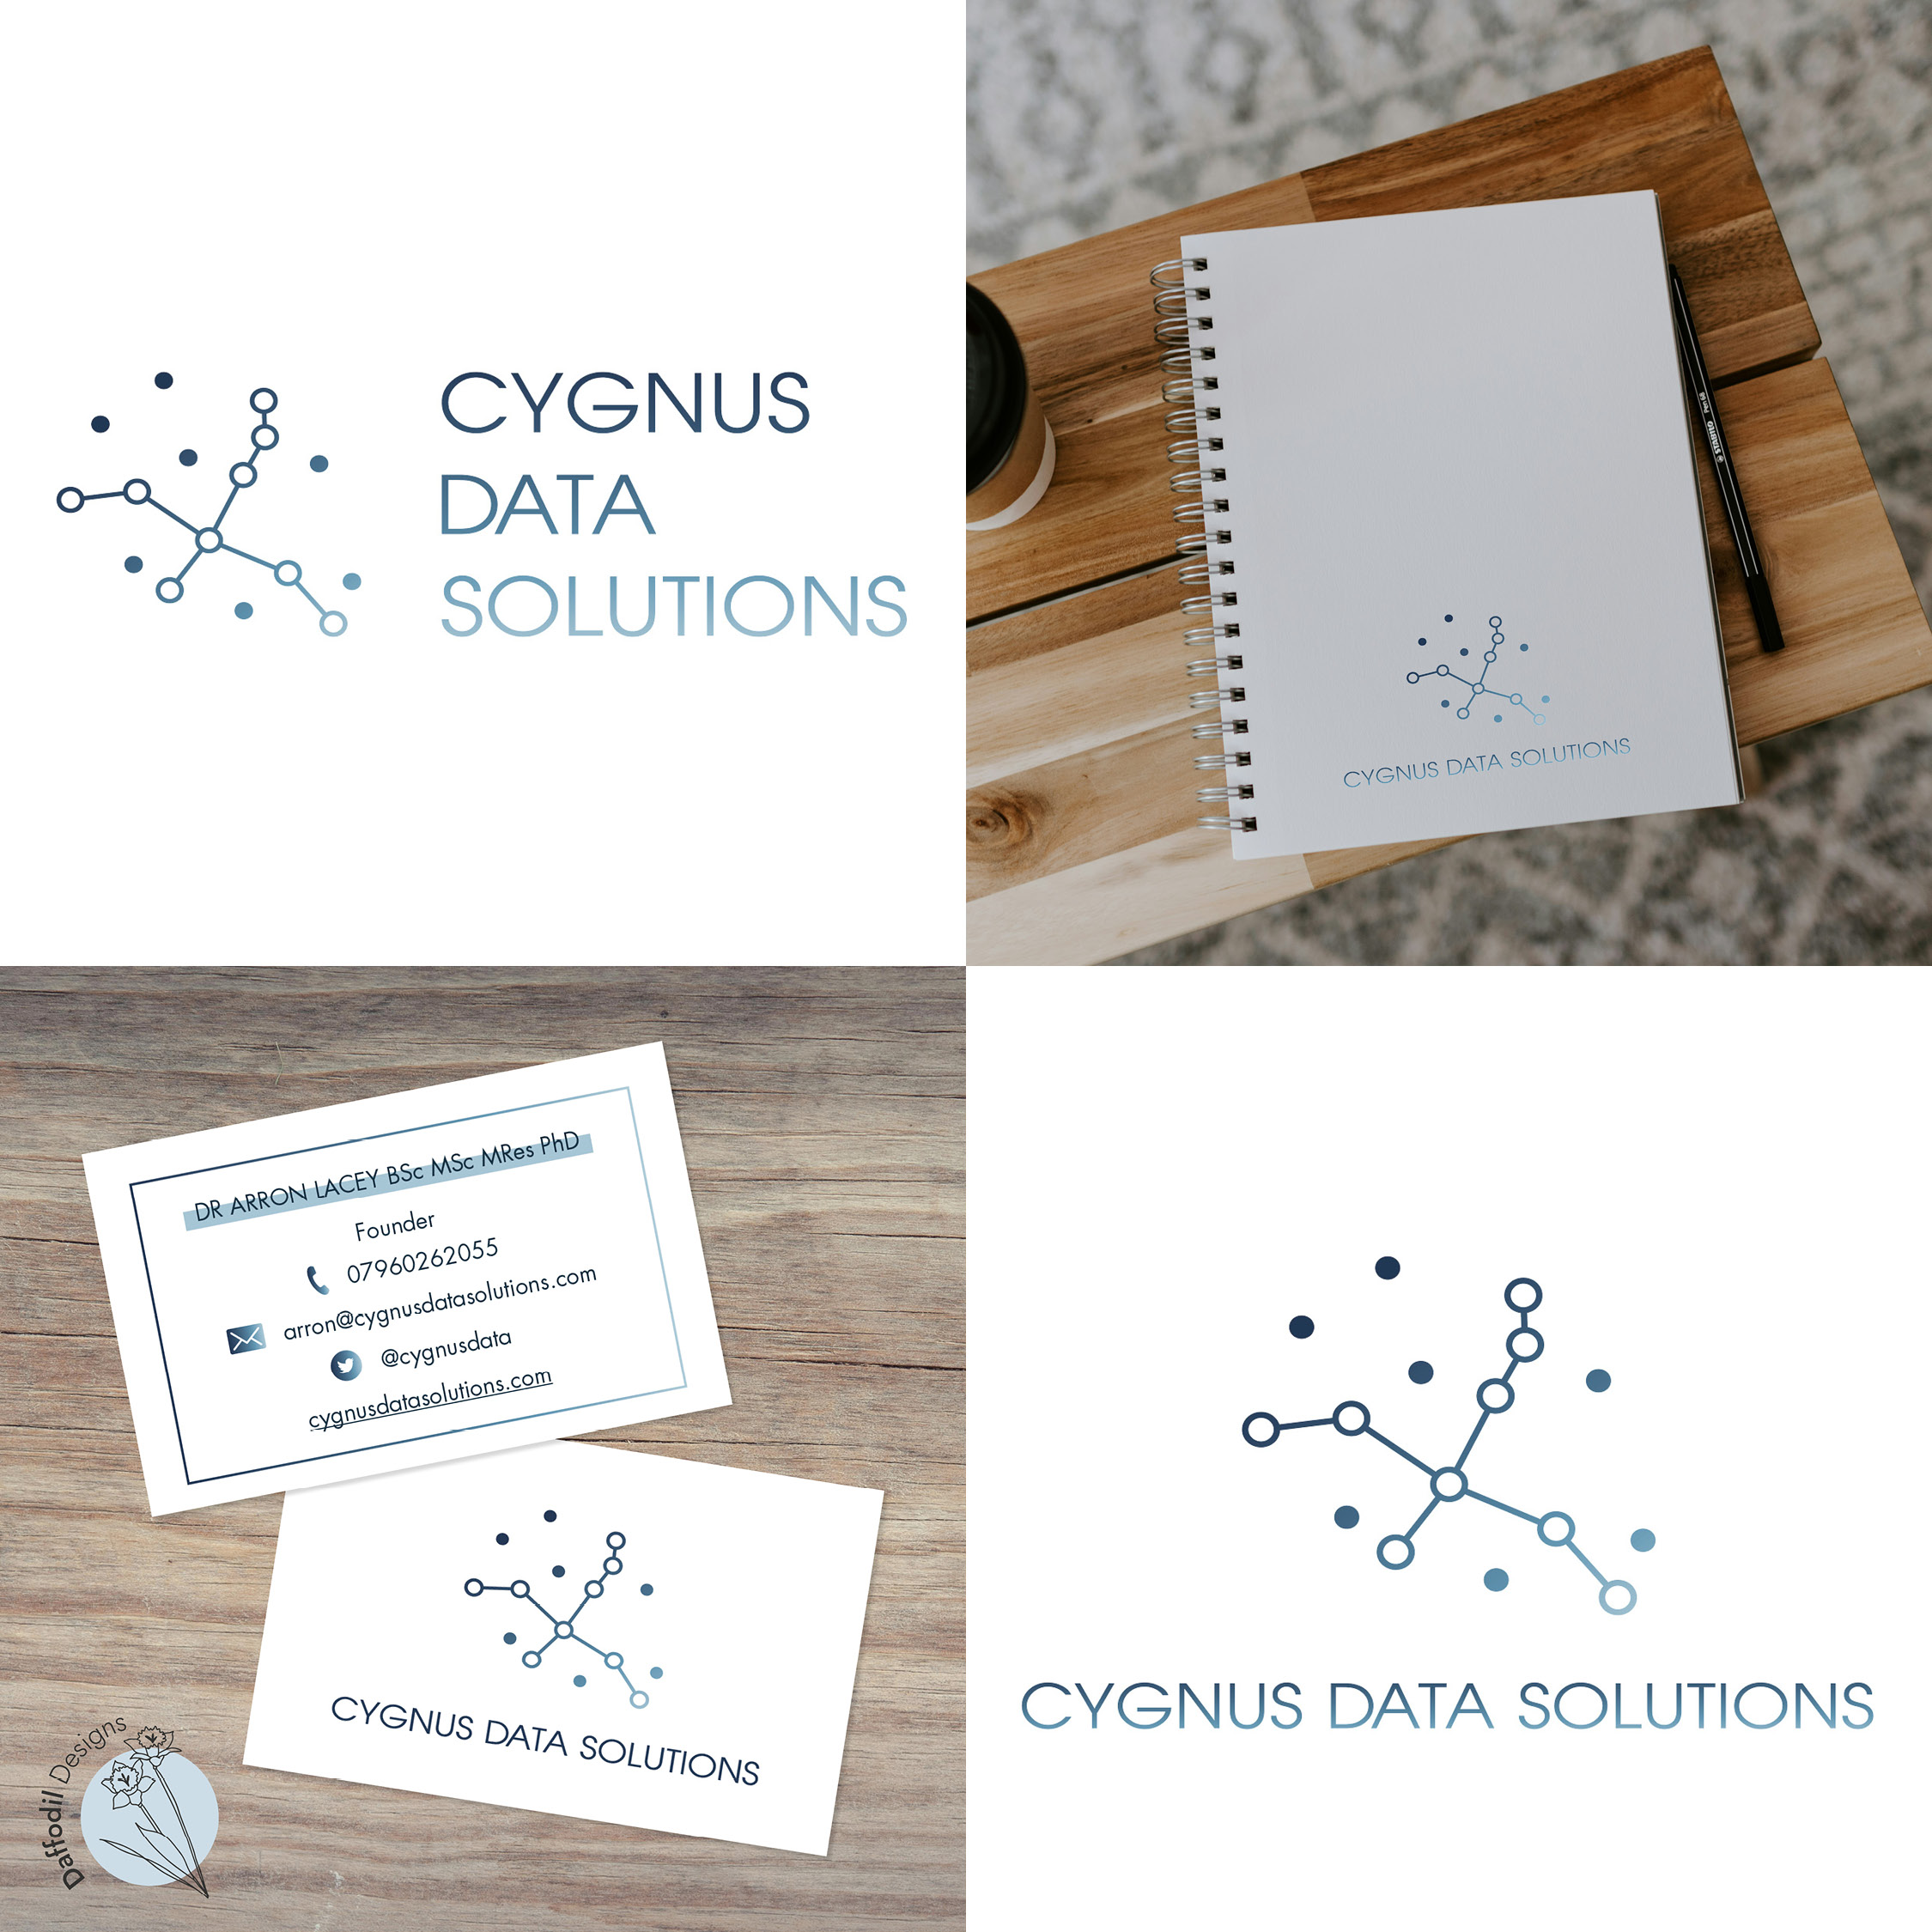 Brand designs for Cygnus Data Solutions Ltd